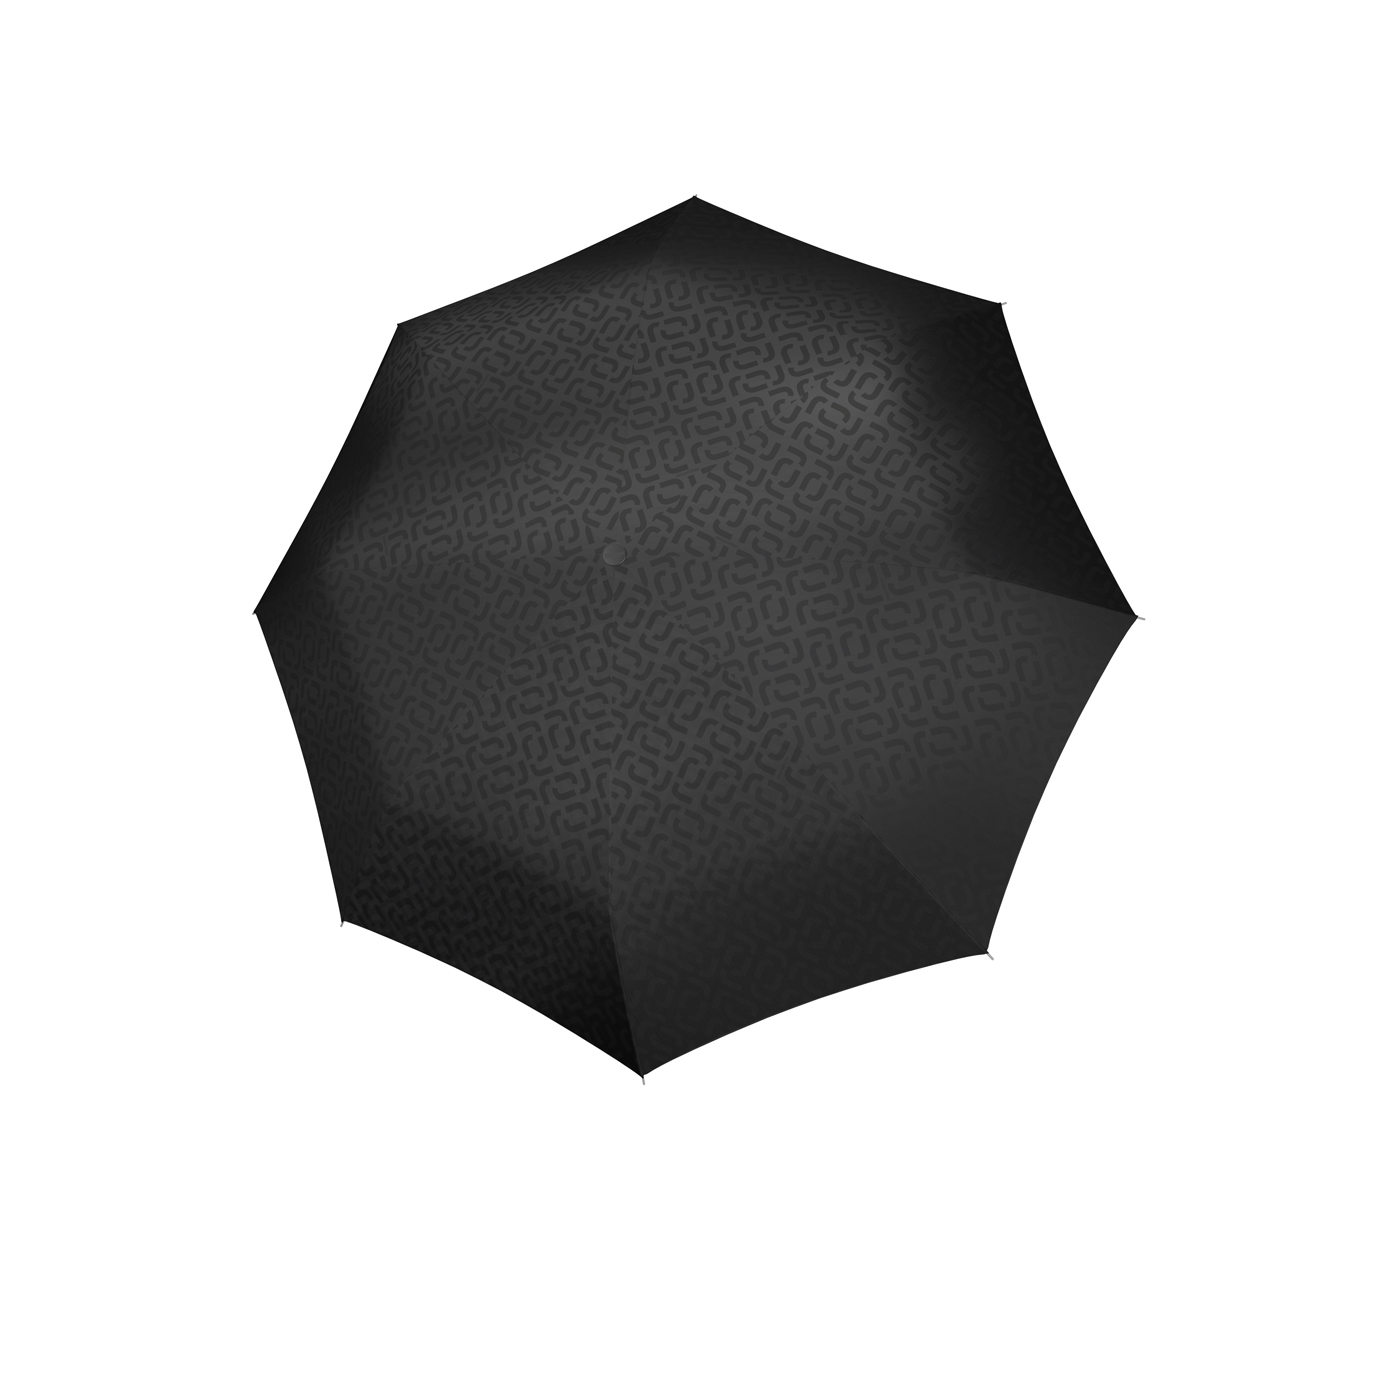 Umbrella Pocket